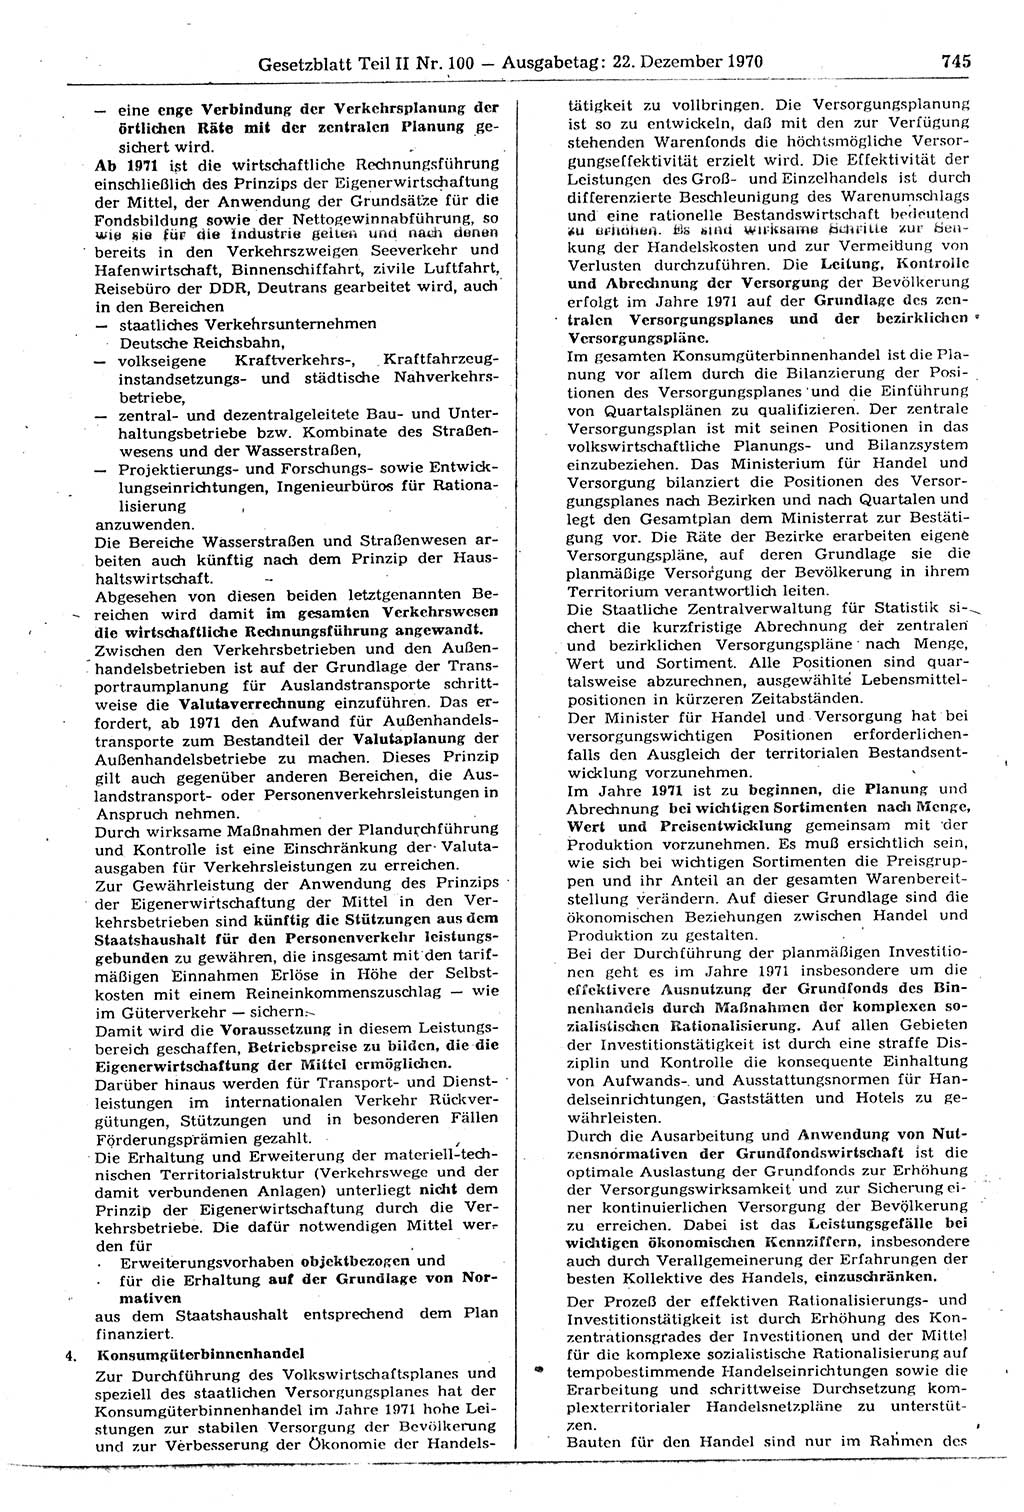 Gesetzblatt (GBl.) der Deutschen Demokratischen Republik (DDR) Teil ⅠⅠ 1970, Seite 745 (GBl. DDR ⅠⅠ 1970, S. 745)